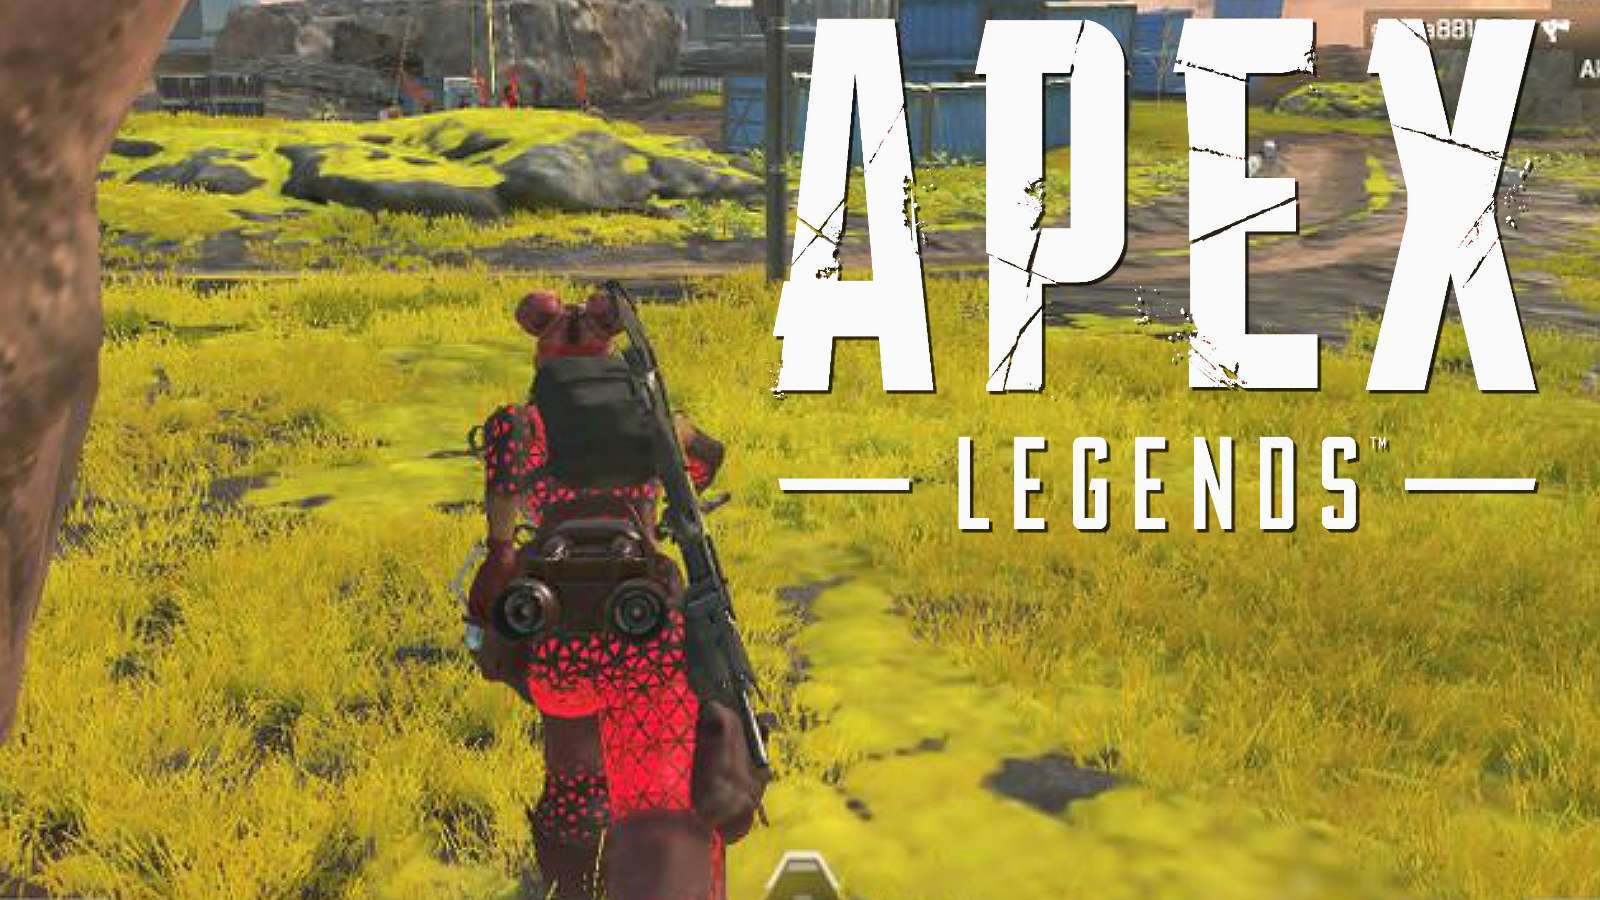 Lifeline running across grass in Apex Legends third person mode